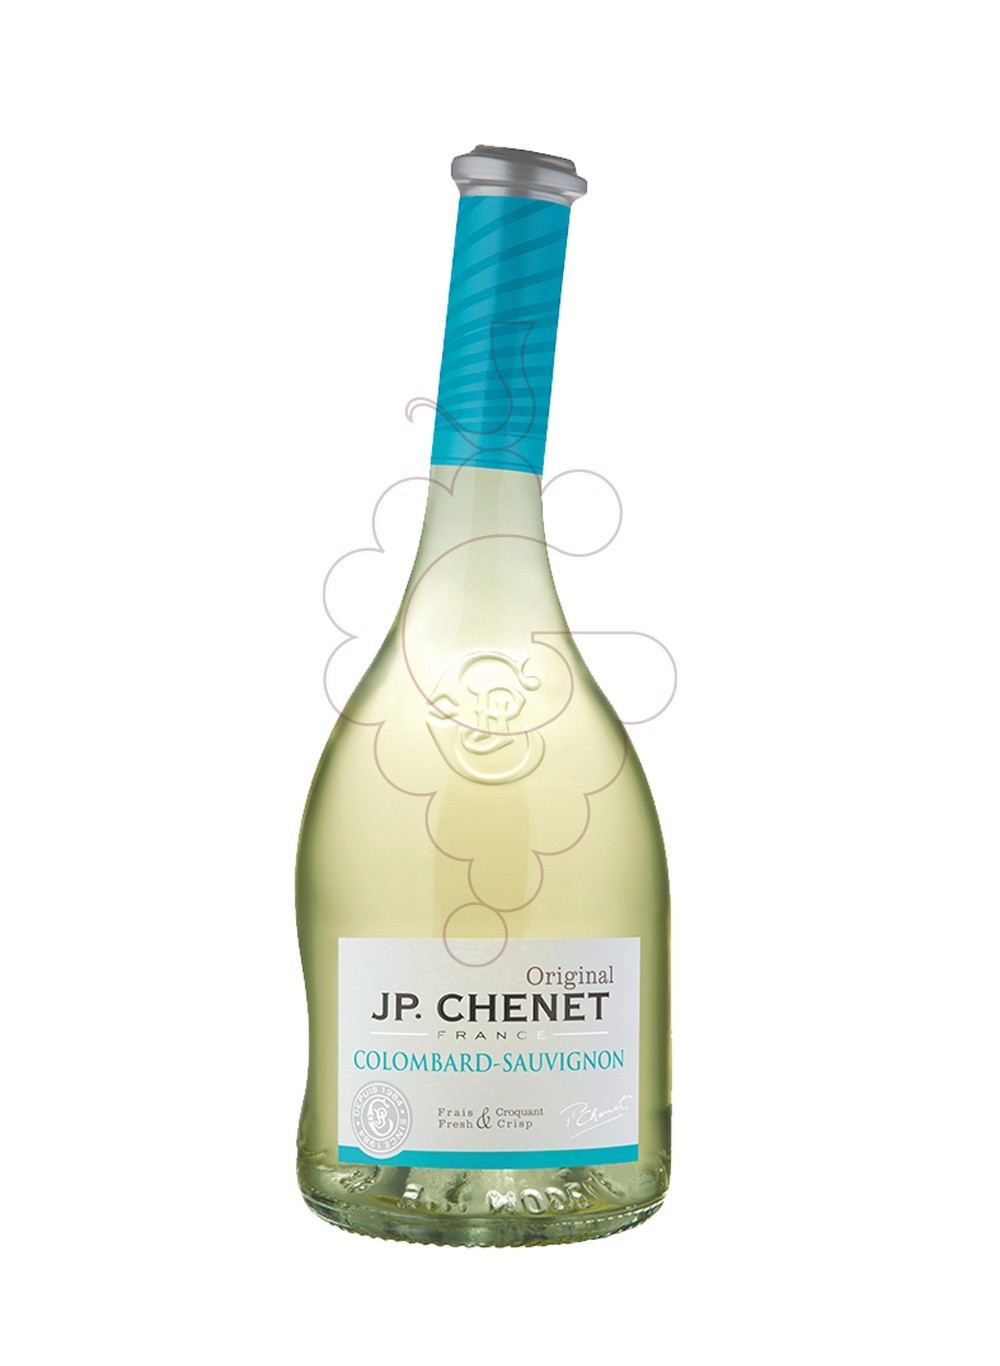 Photo JP Chenet Original Colombard-Sauvignon Blanc white wine